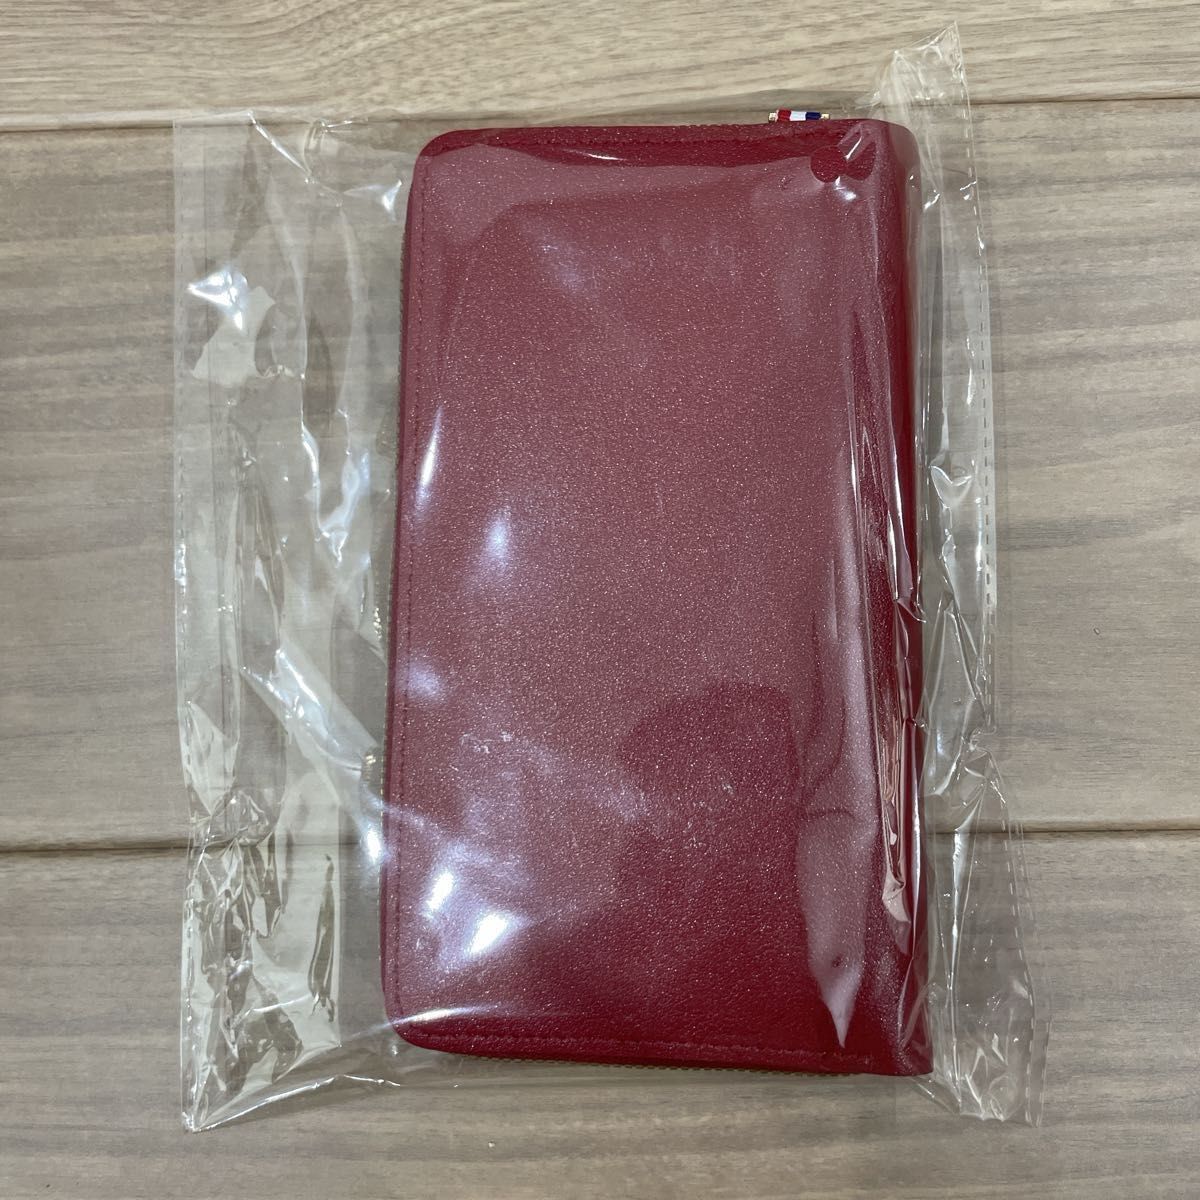 【新品未使用】スマホショルダー 赤 レッド 財布 一体型 コンパクト 旅行 行楽 シンプル  スマホポーチ